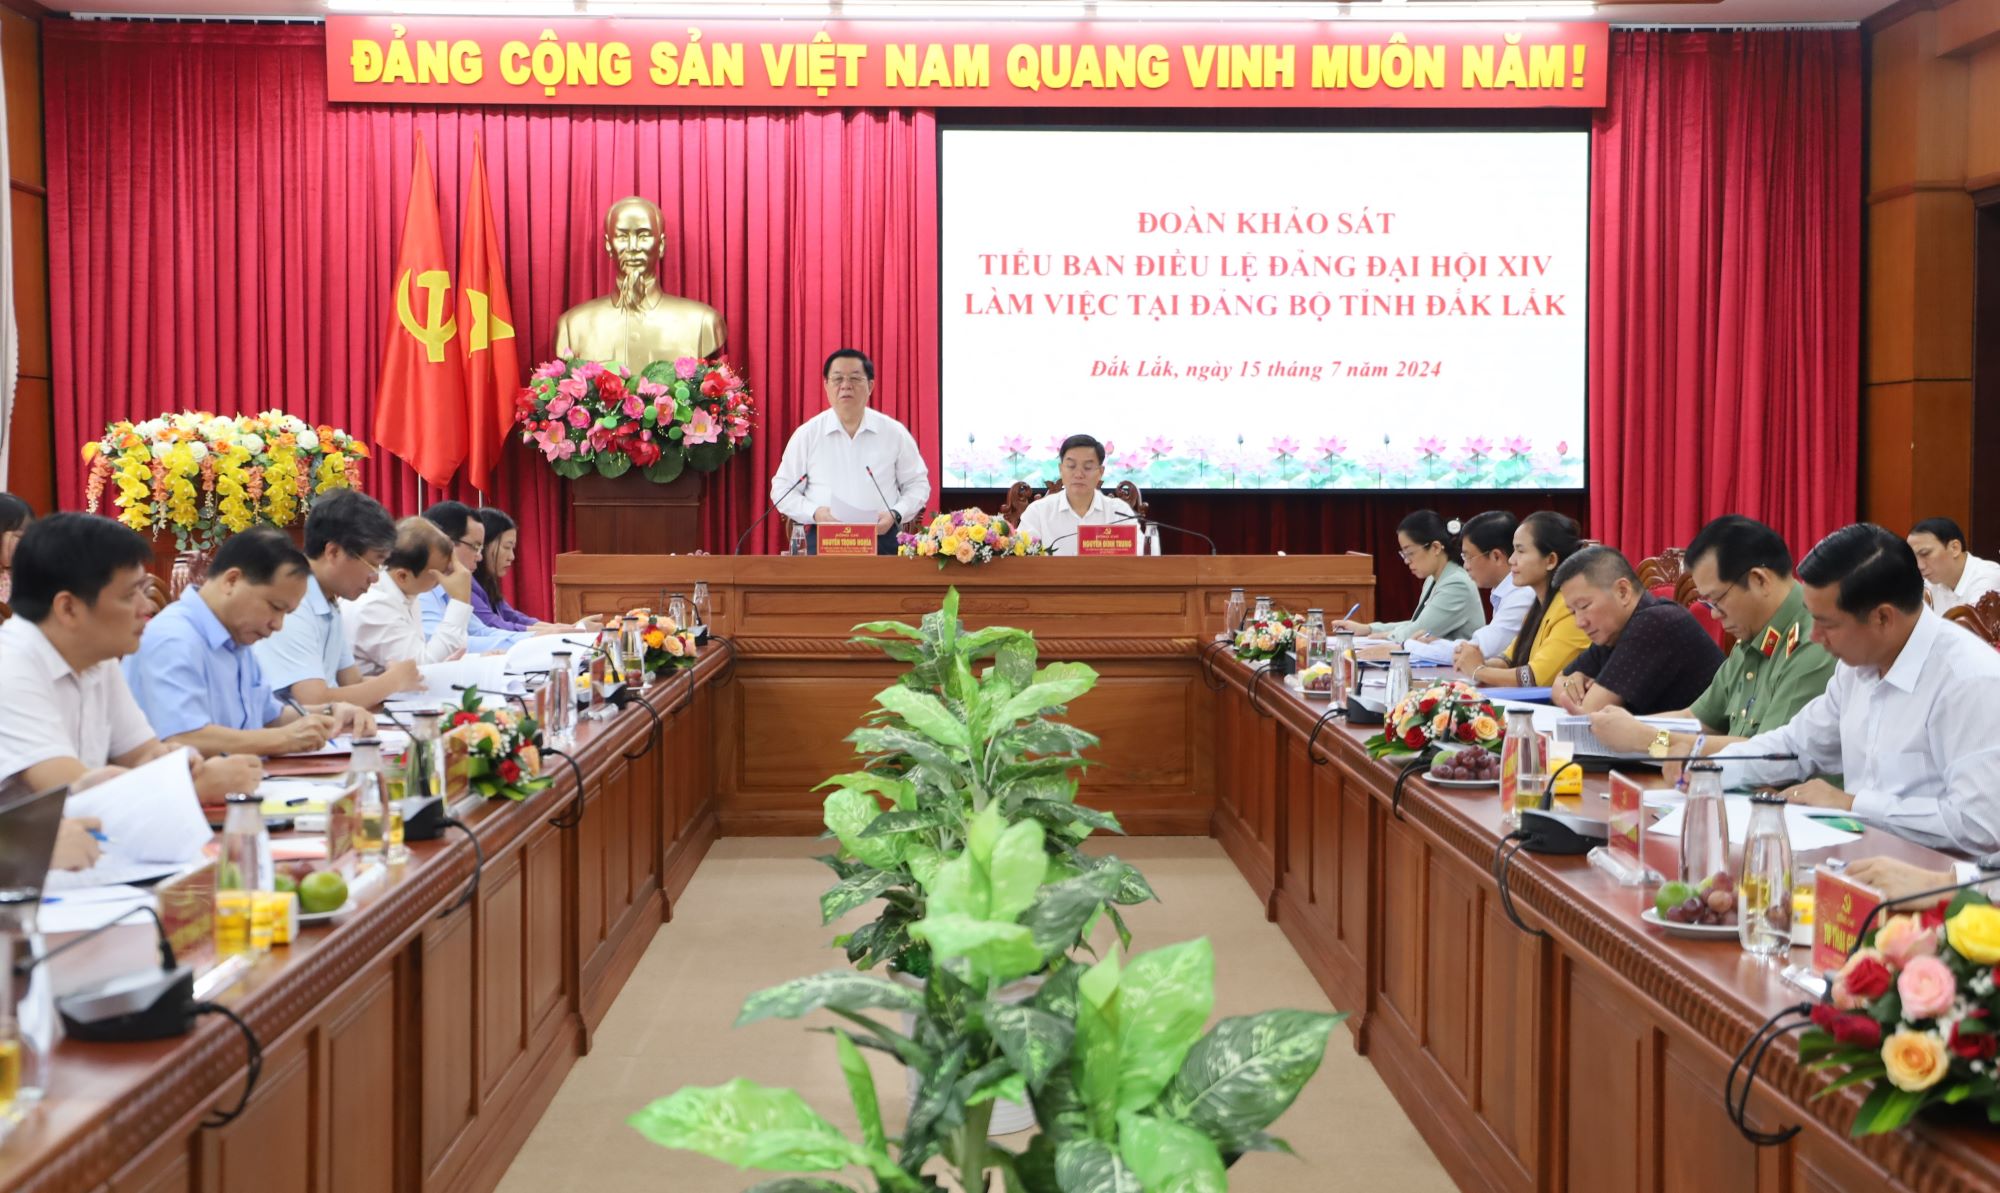 Đoàn khảo sát Tiểu ban Điều lệ Đảng Đại hội XIV làm việc tại Đảng bộ tỉnh Đắk Lắk